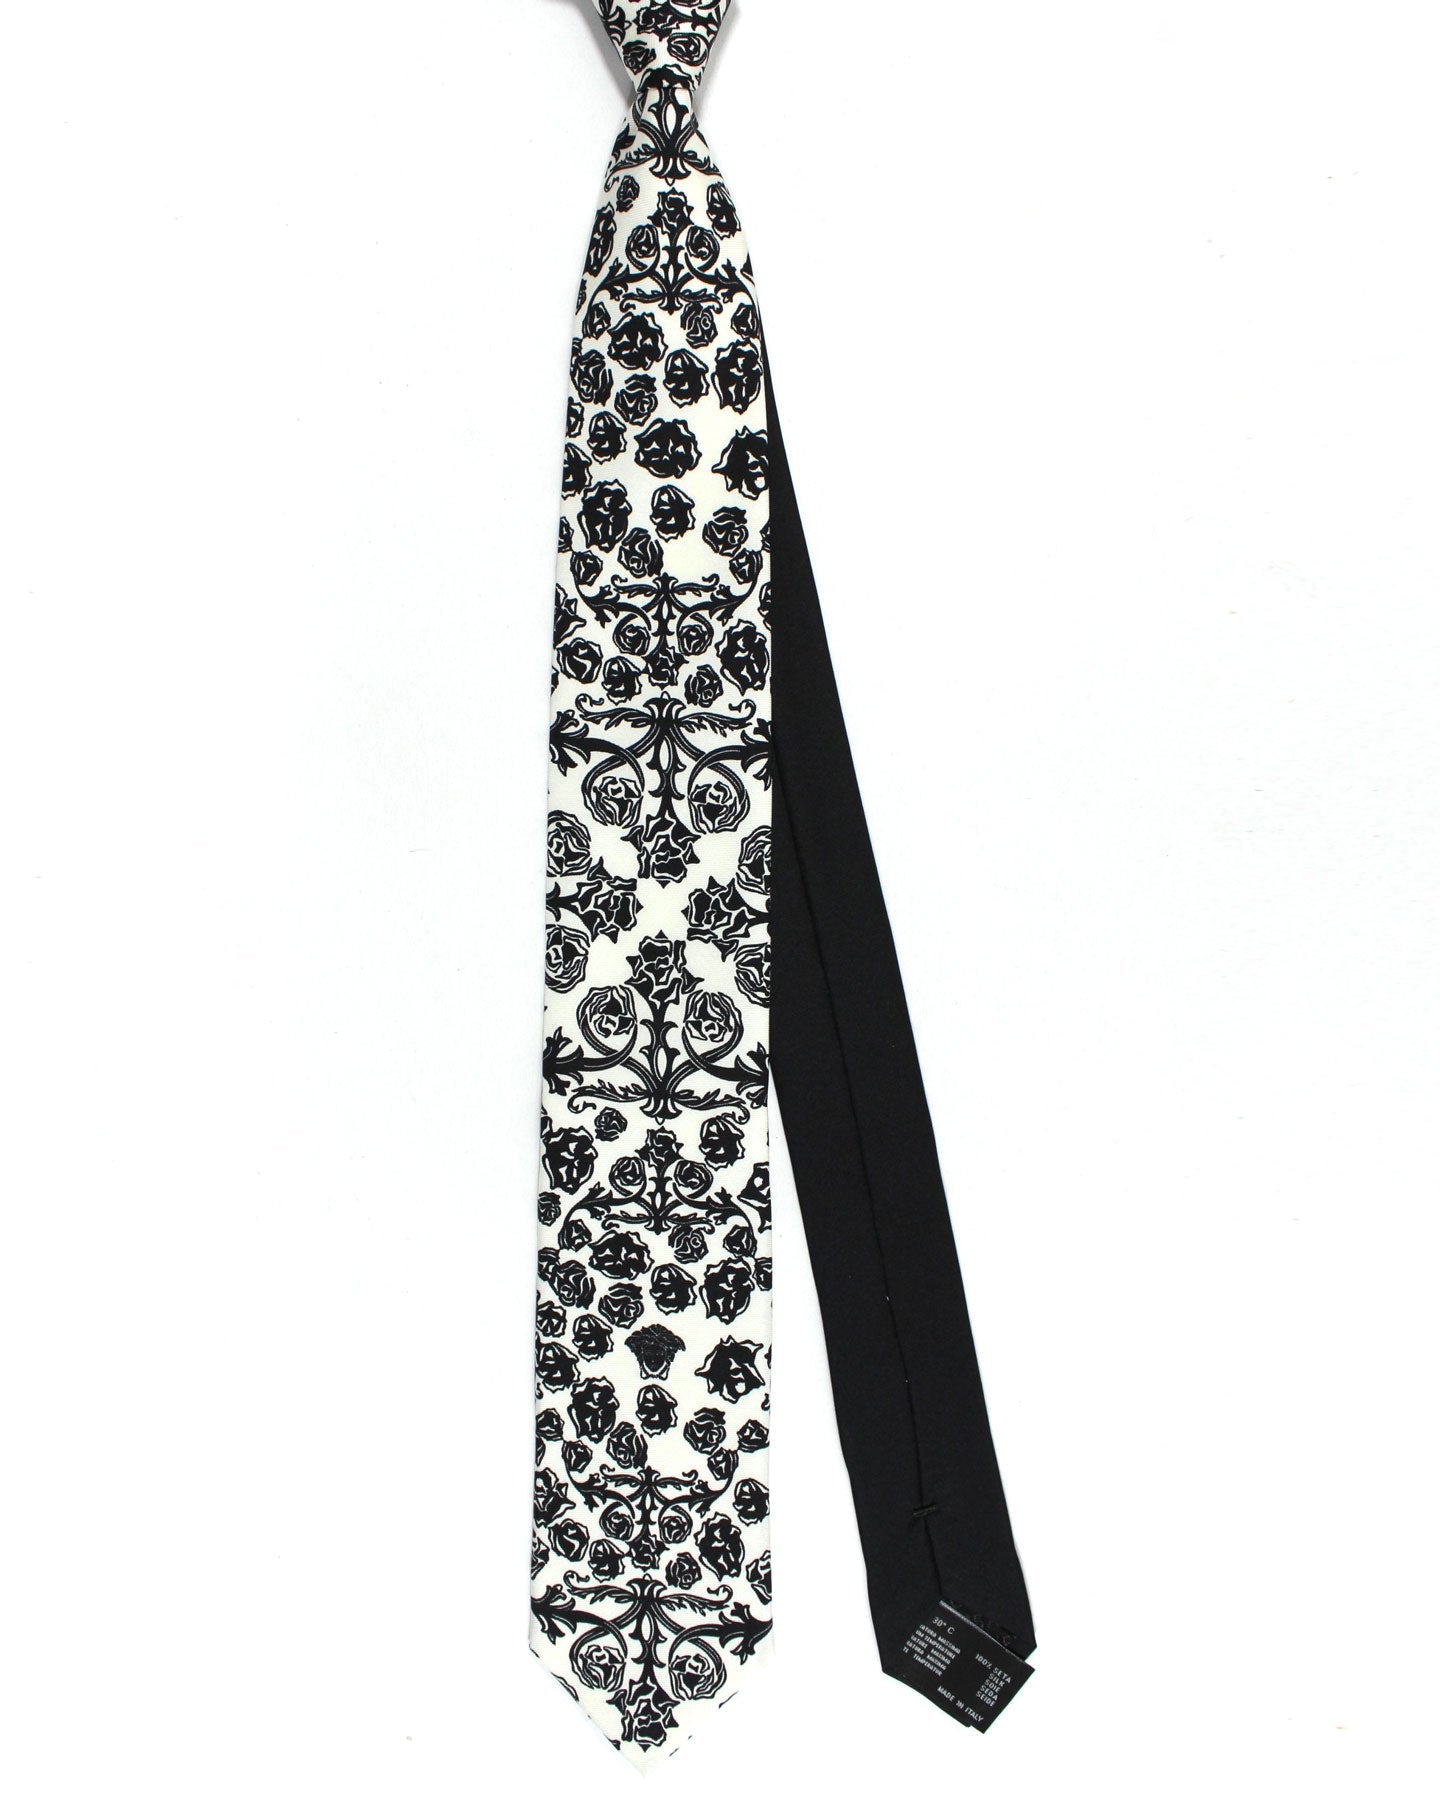 Versace Silk Tie White Black Floral - Narrow Necktie